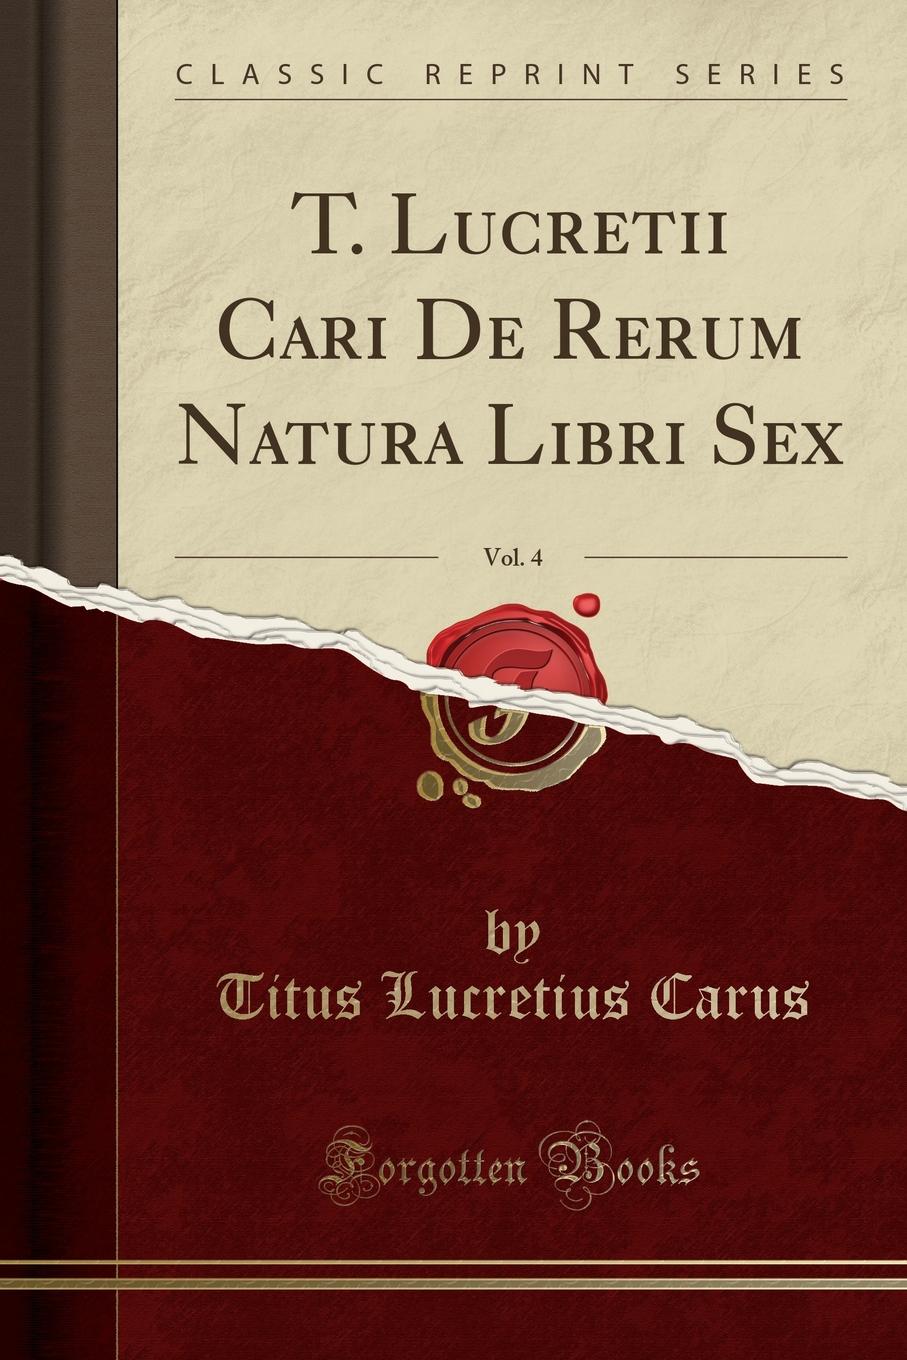 T. Lucretii Cari De Rerum Natura Libri Sex, Vol. 4 (Classic Reprint)